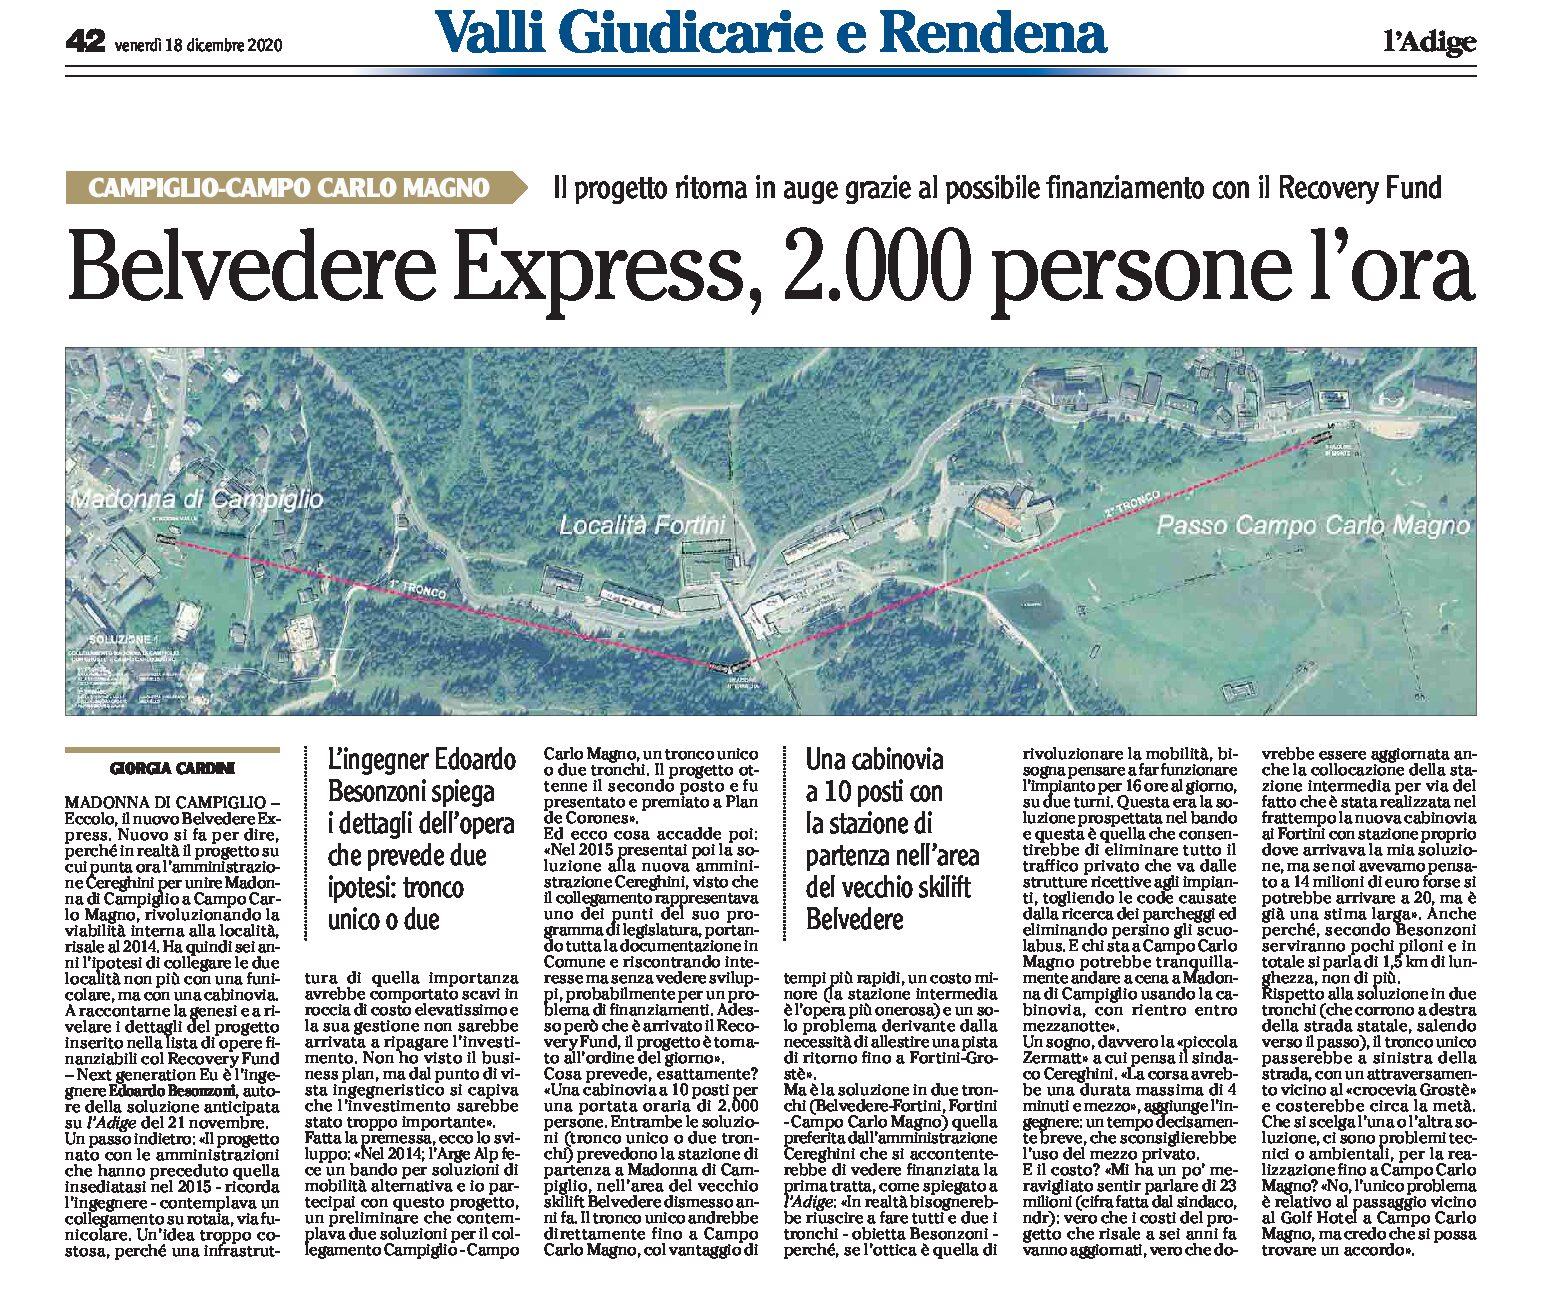 Campiglio: Belvedere Express, 2000 persone l’ora. Il progetto ritorna in auge